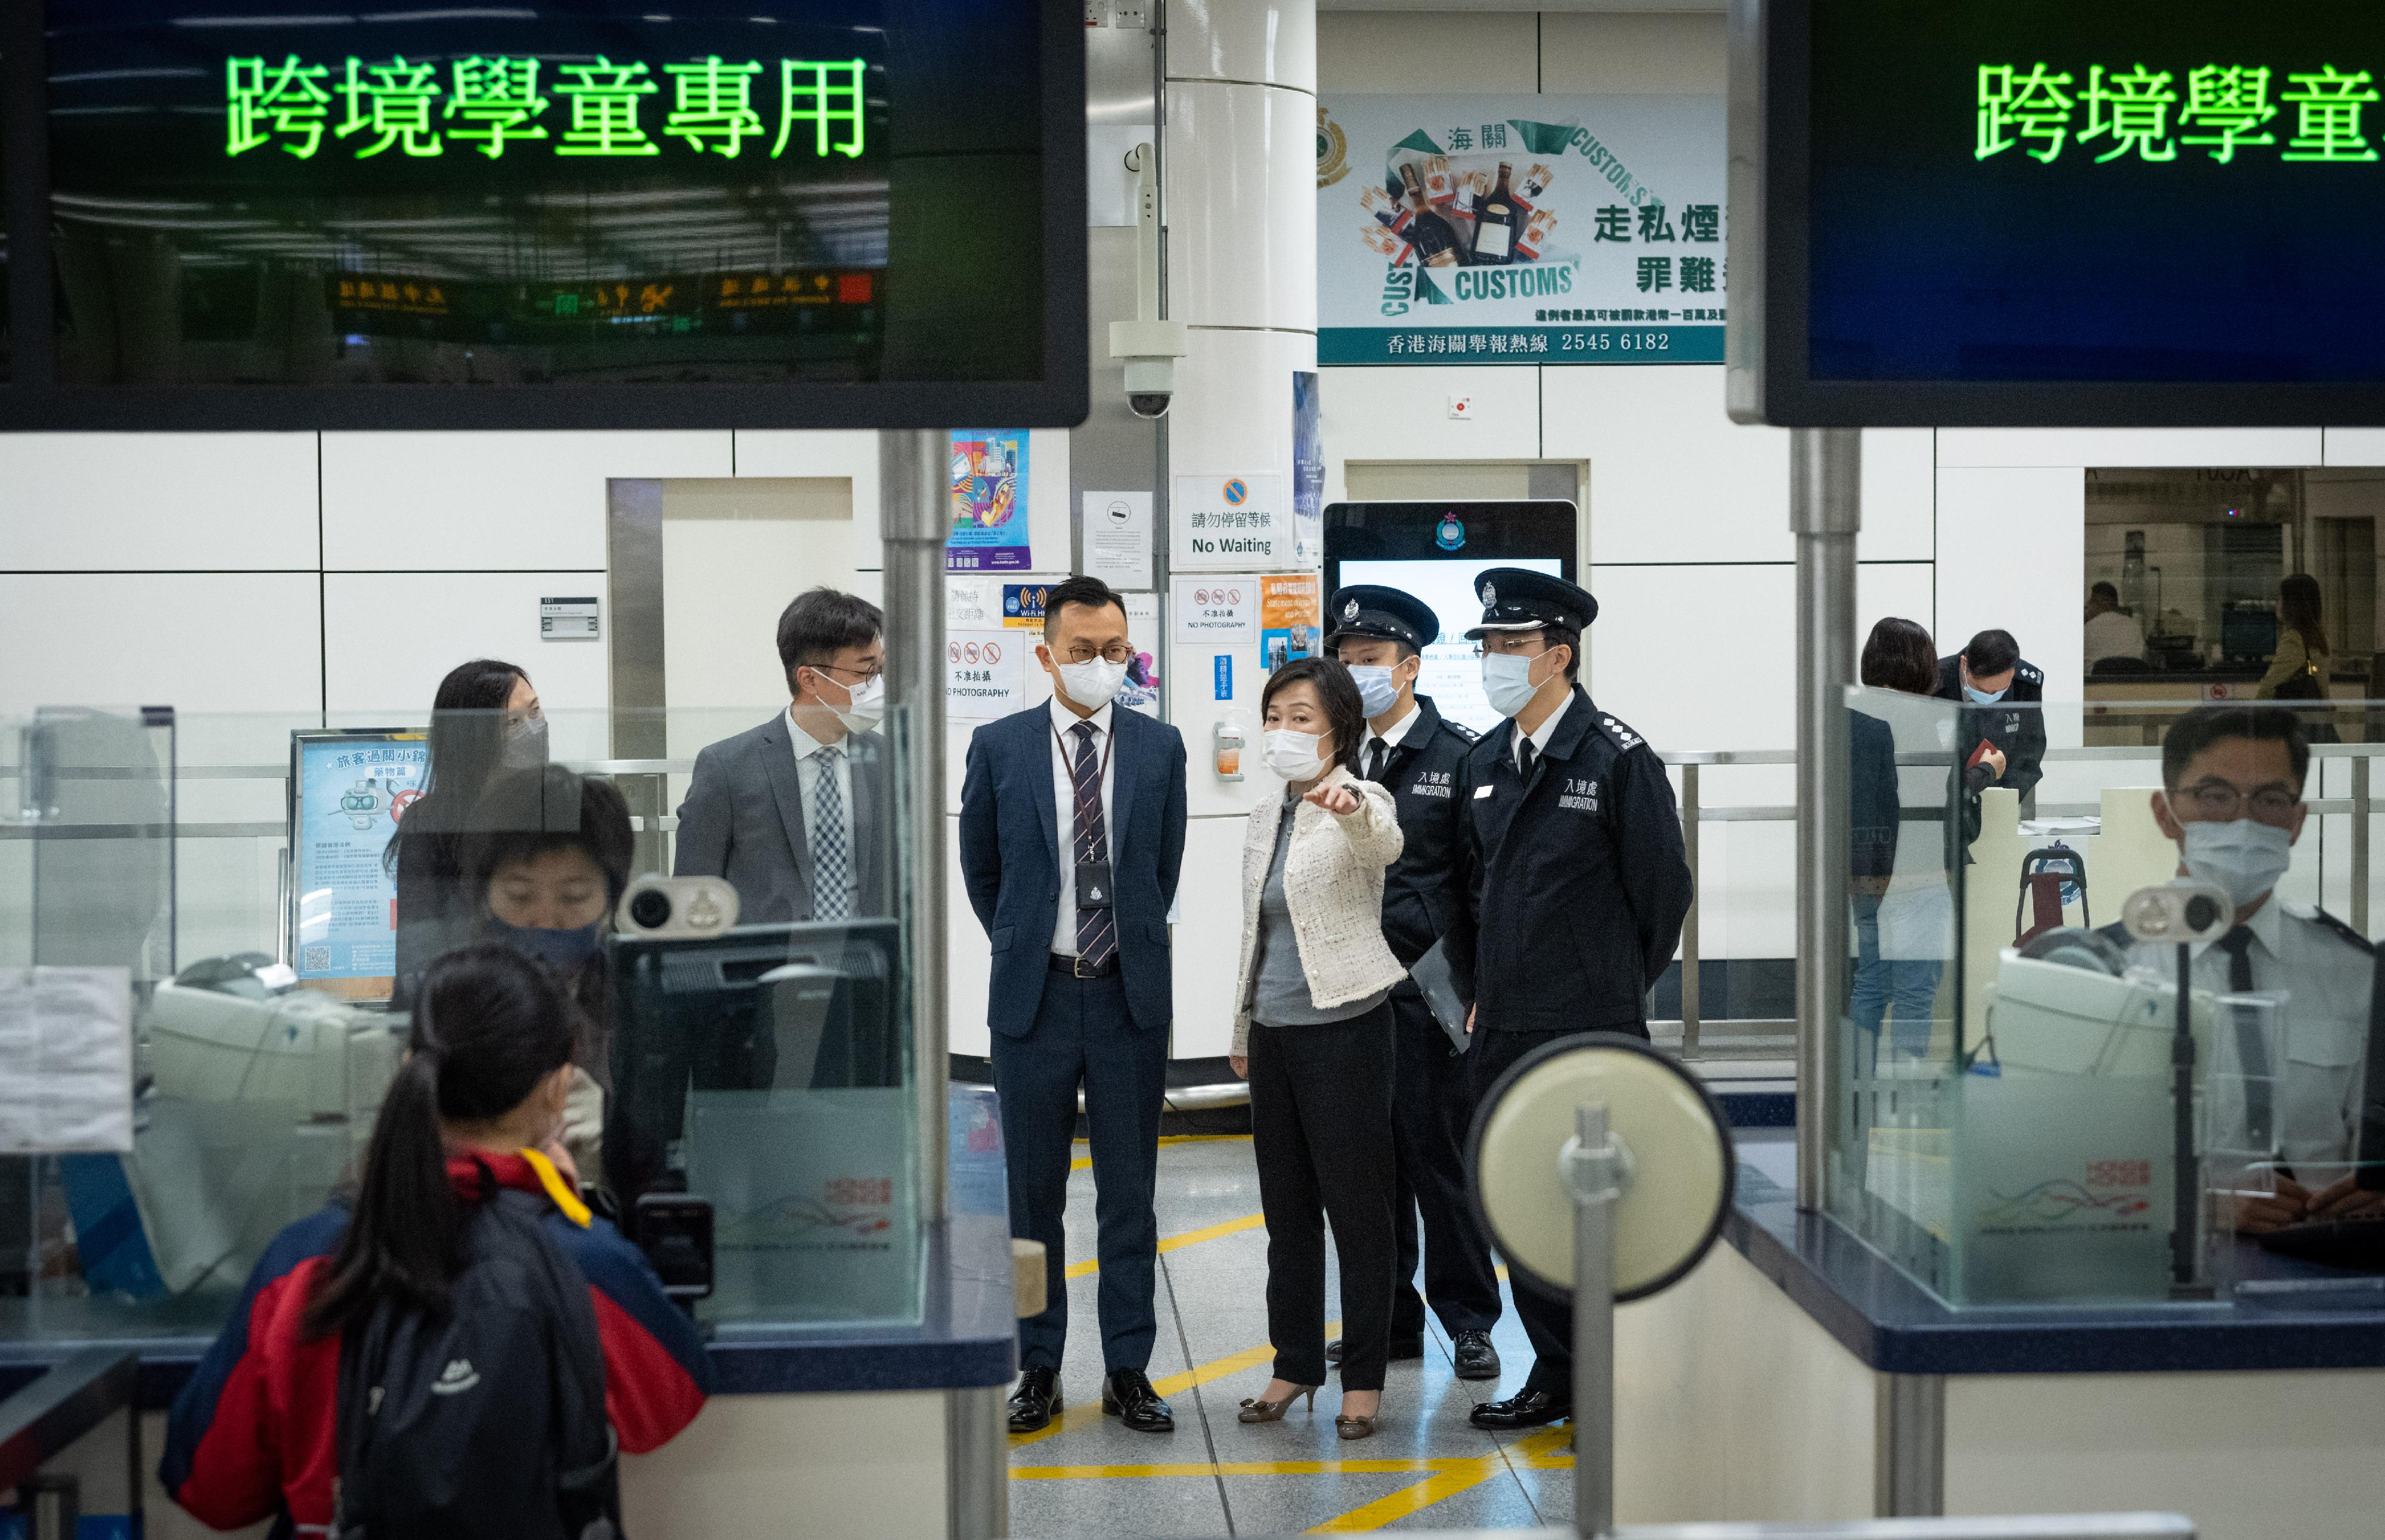 教育局局長蔡若蓮博士今早（二月八日）到訪深圳灣管制站，了解跨境學生過關的情況。圖示蔡若蓮博士（右三）聽取入境事務處人員簡介為跨境學生提供的便利過關服務。

